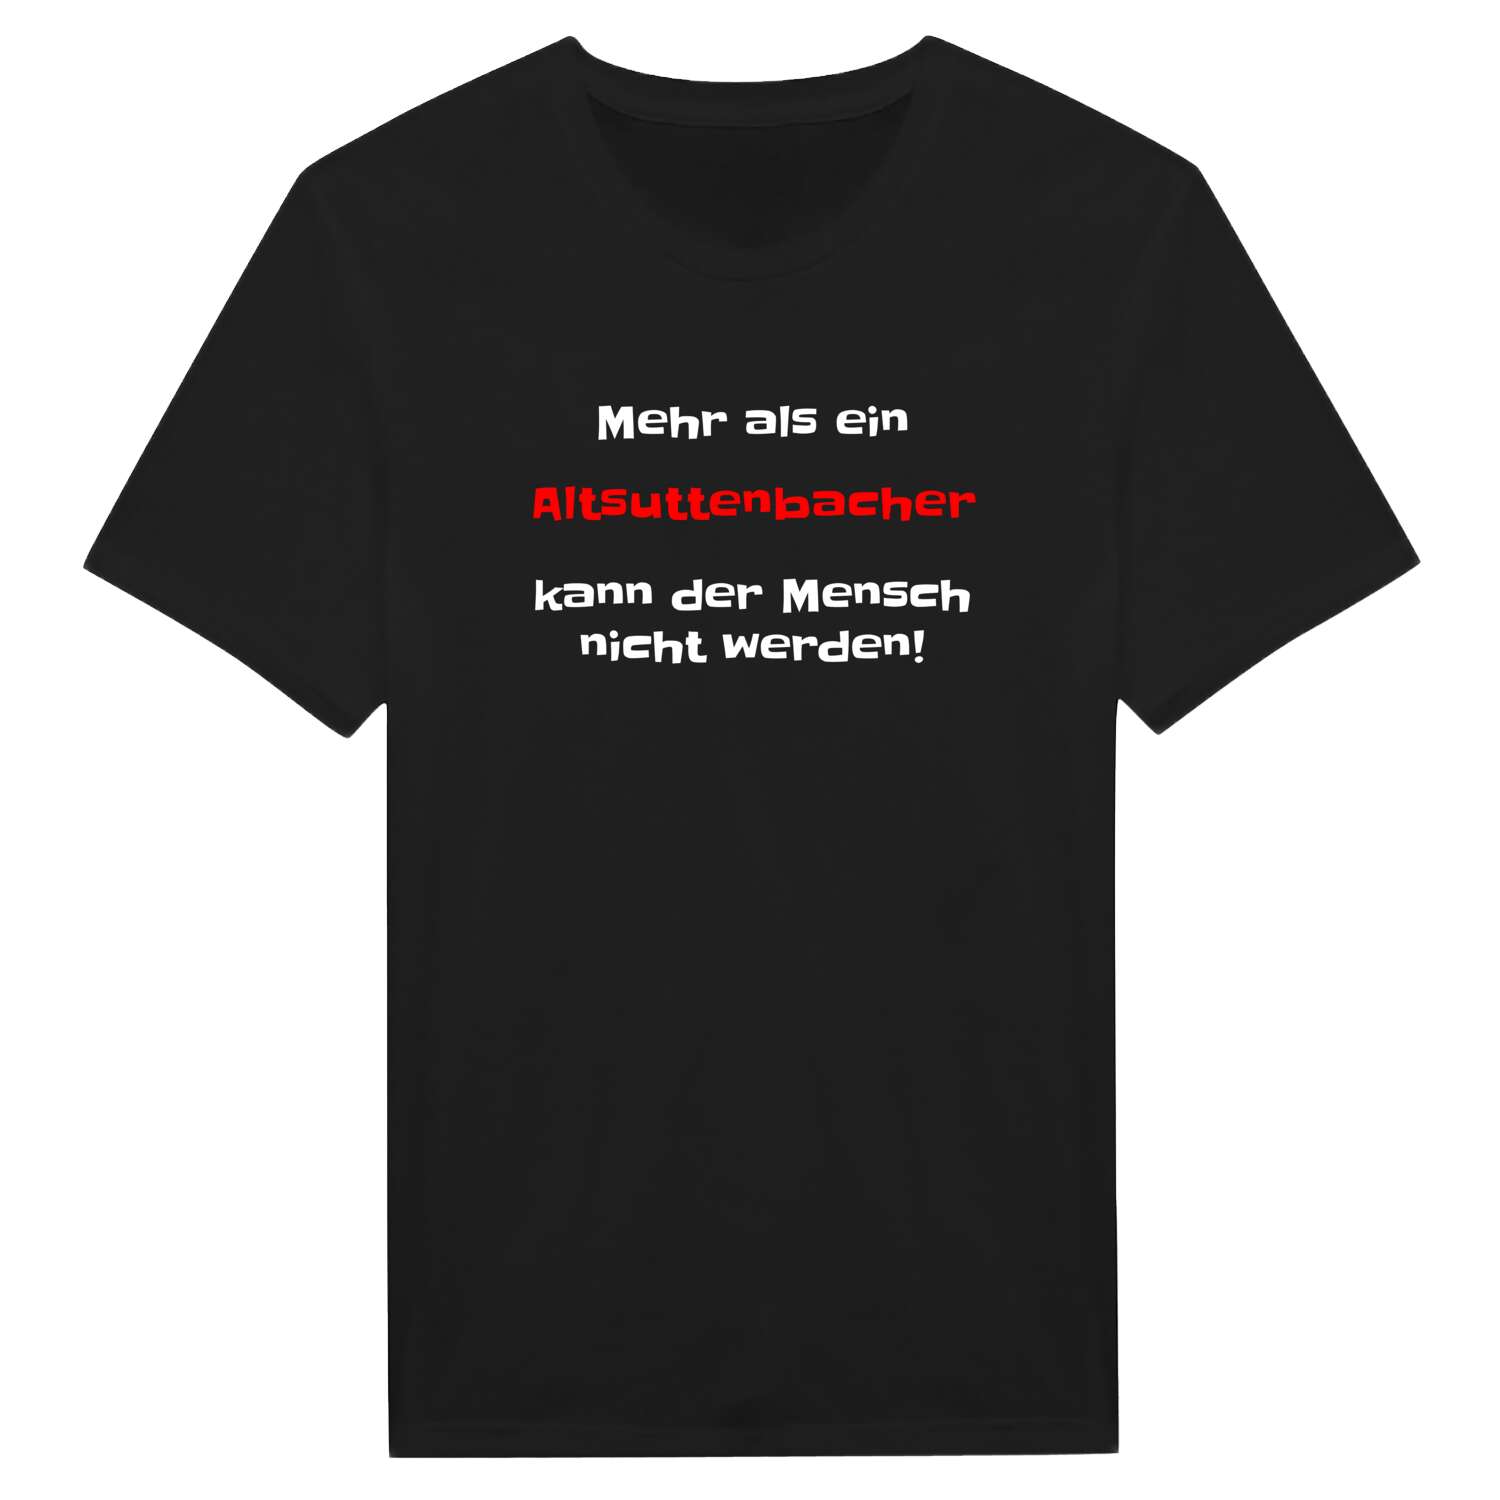 Altsuttenbach T-Shirt »Mehr als ein«